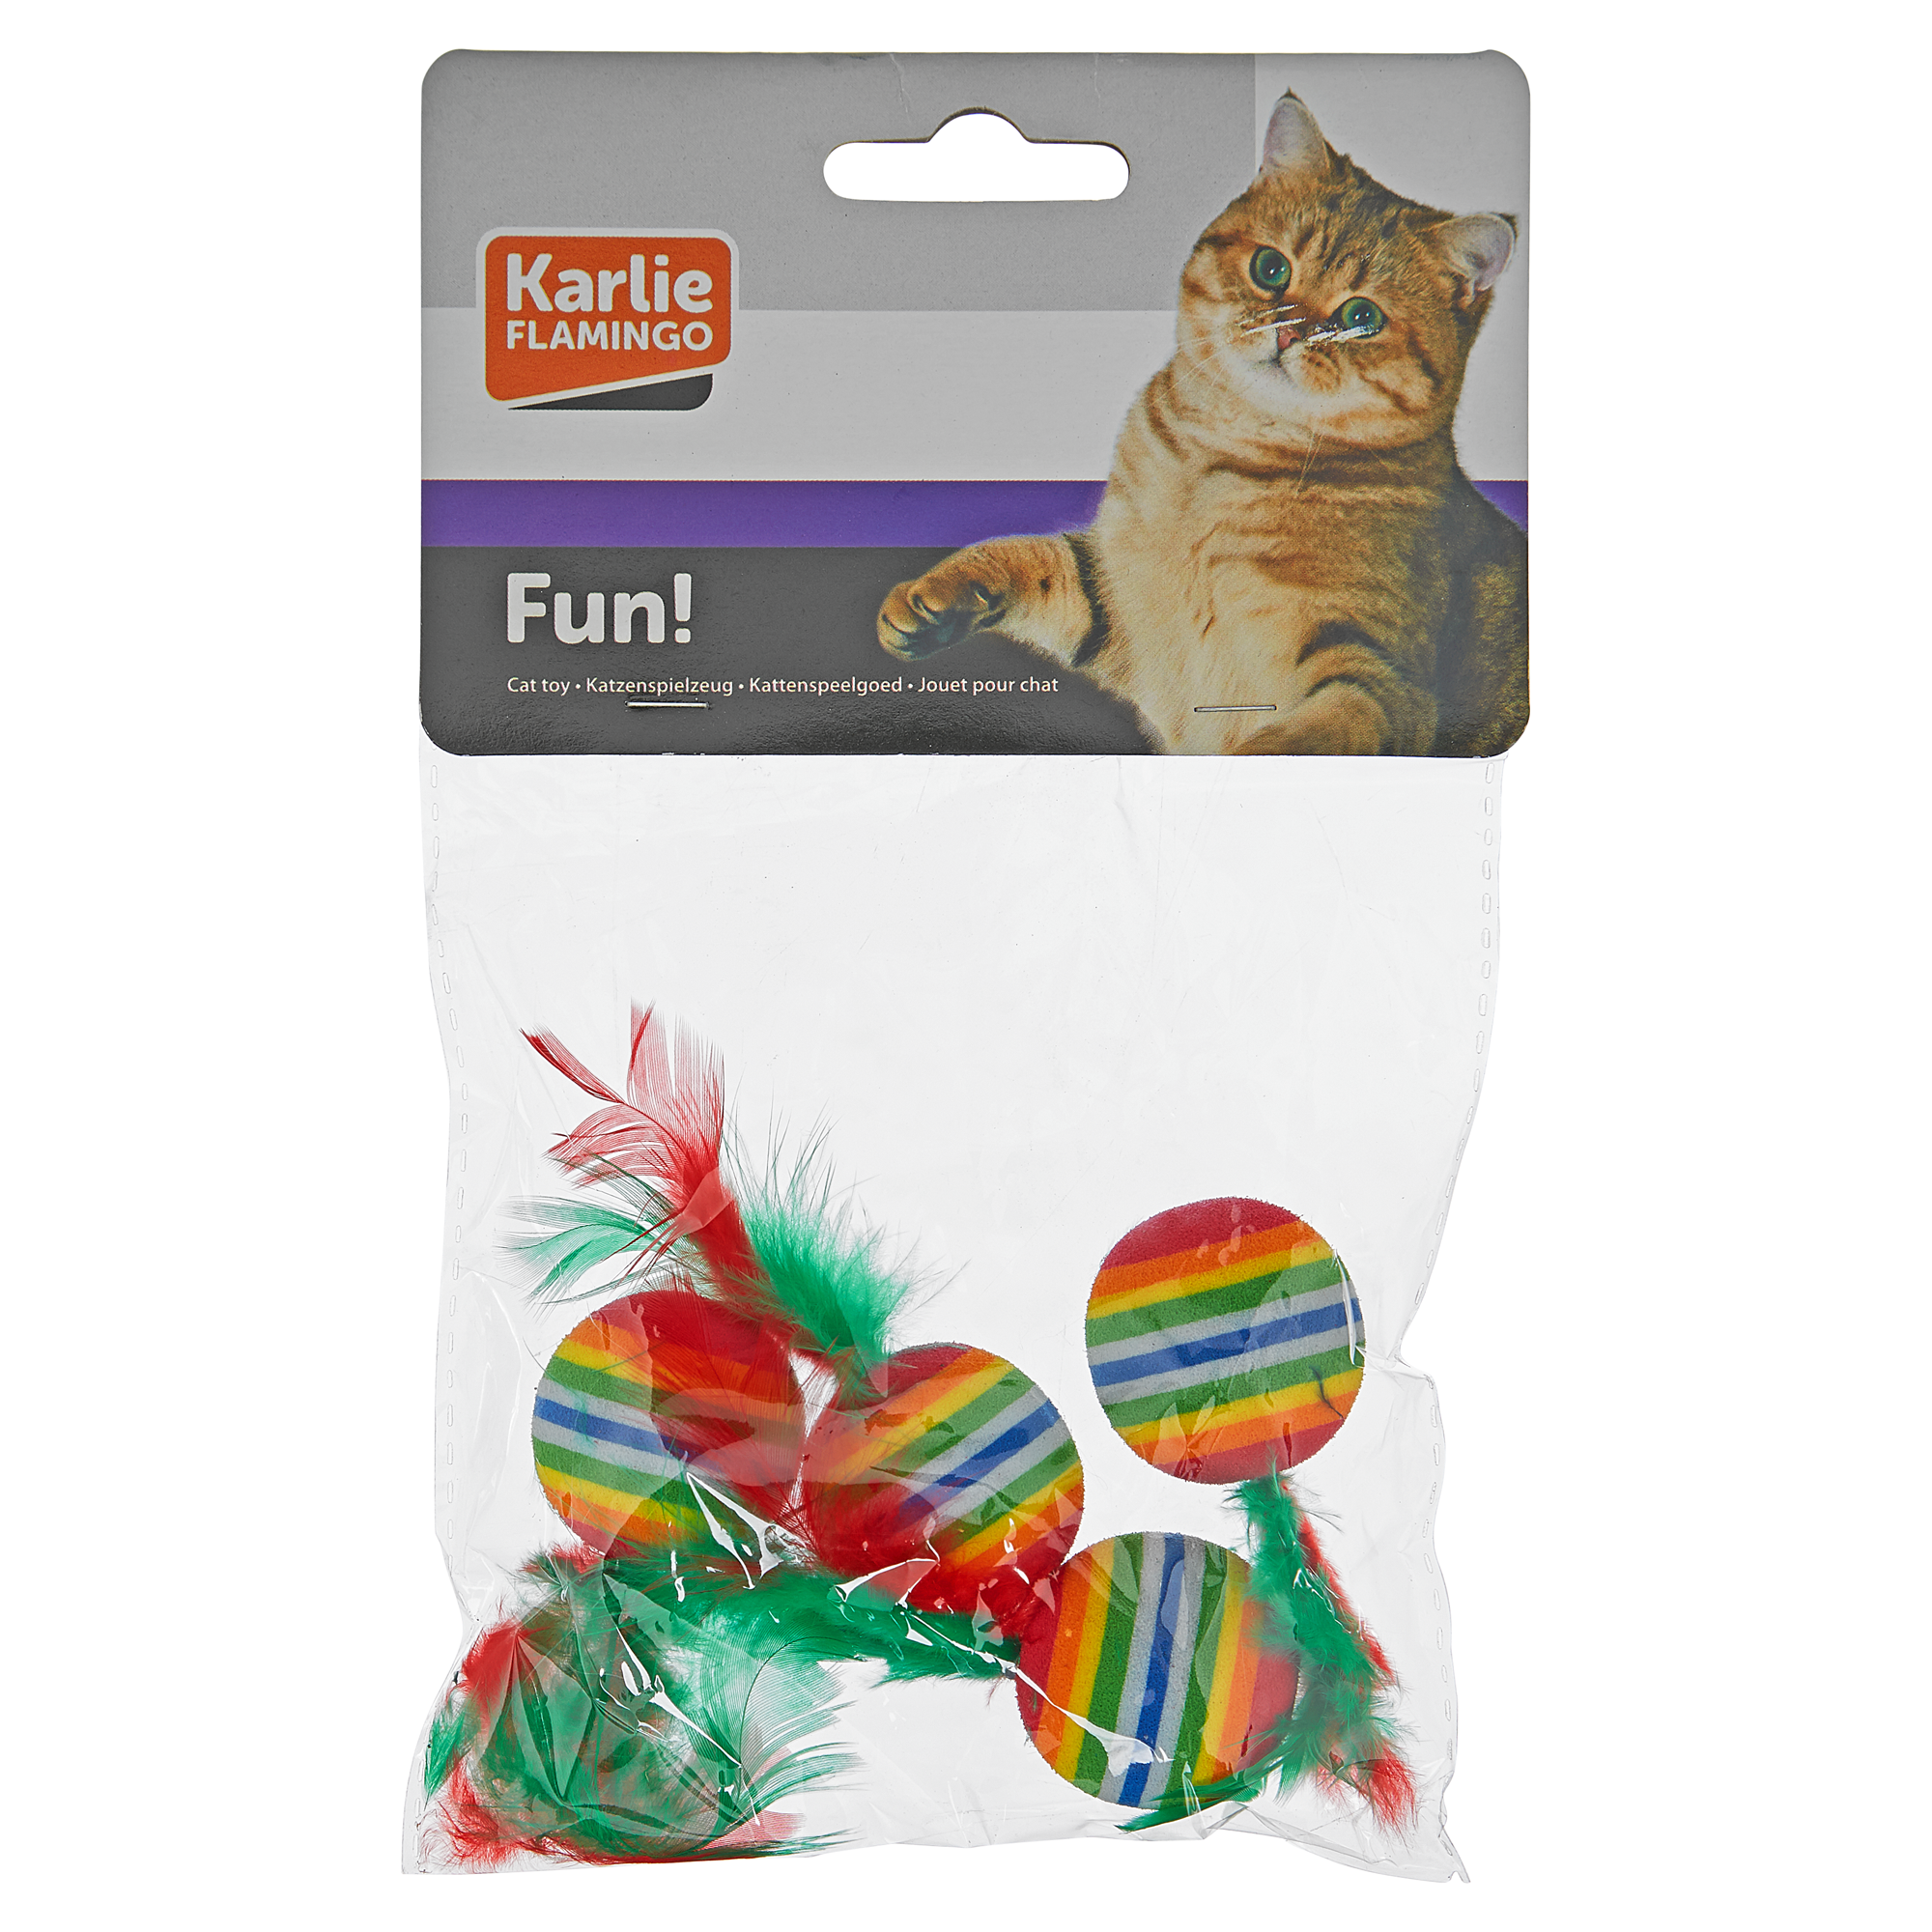 Katzenspielzeug "Fun!" Regenbogenball mit Feder 4 Stück + product picture